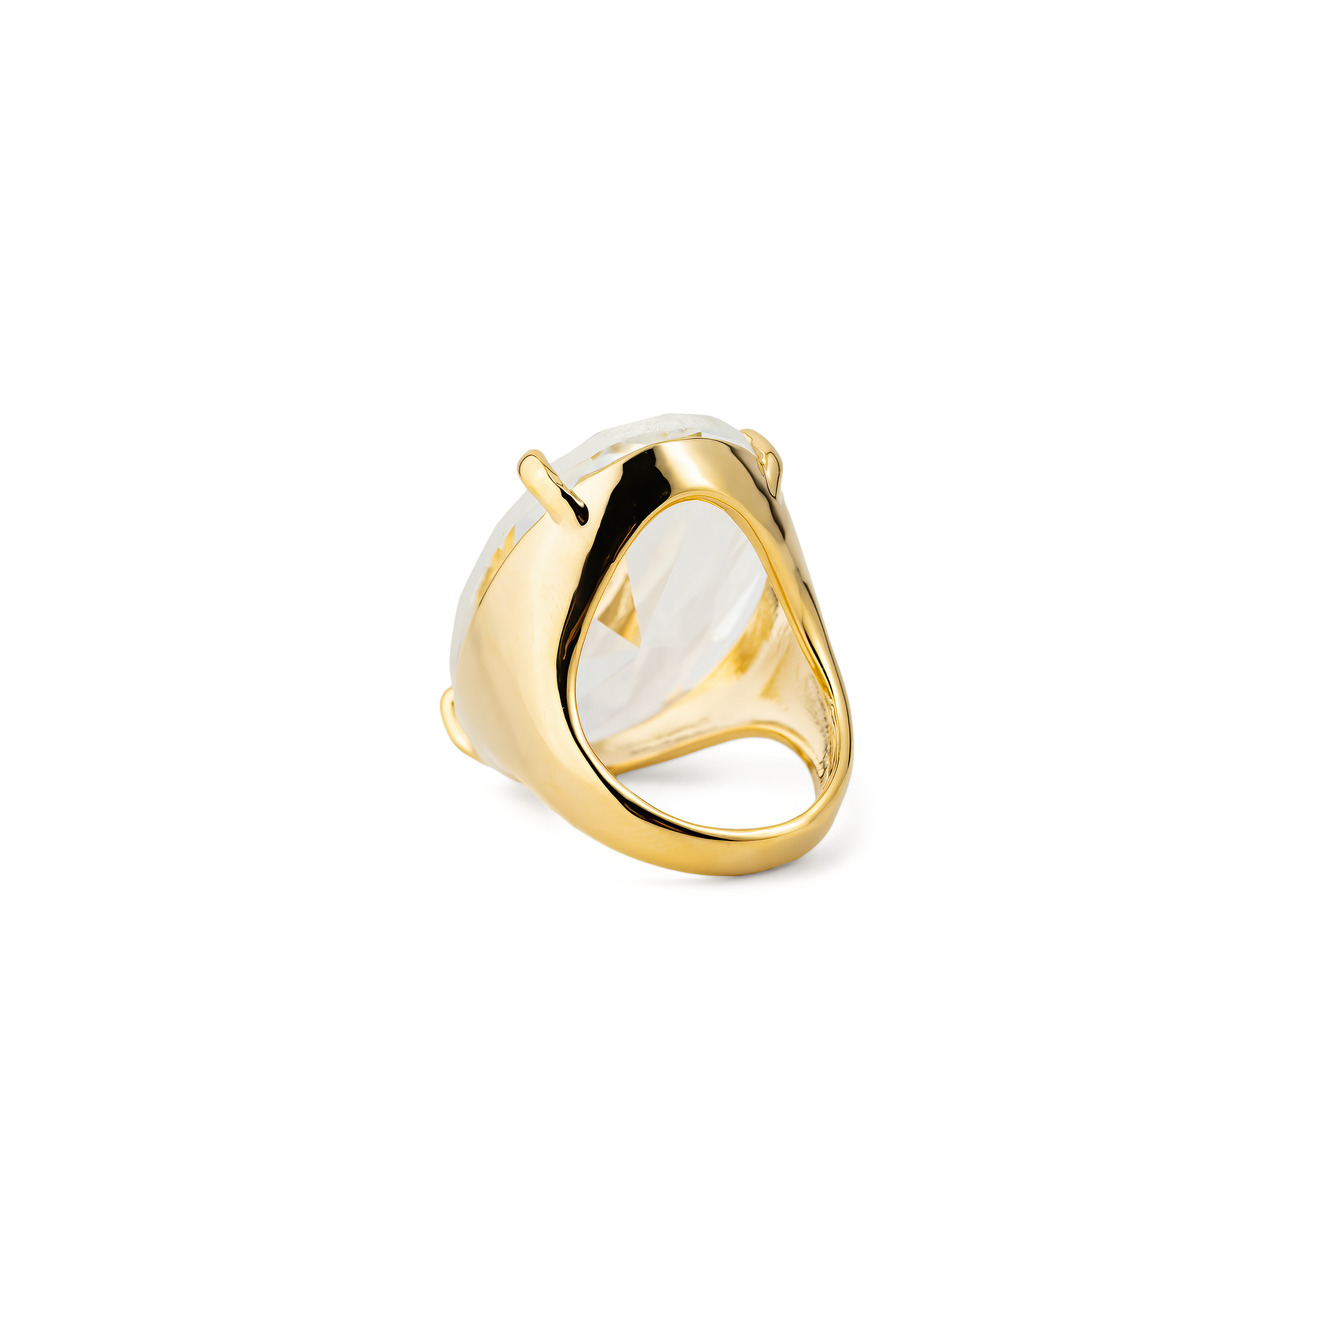 Herald Percy Золотистое кольцо с овальным кристаллом herald percy золотистая цепочка с подвеской сердцем с кристаллом